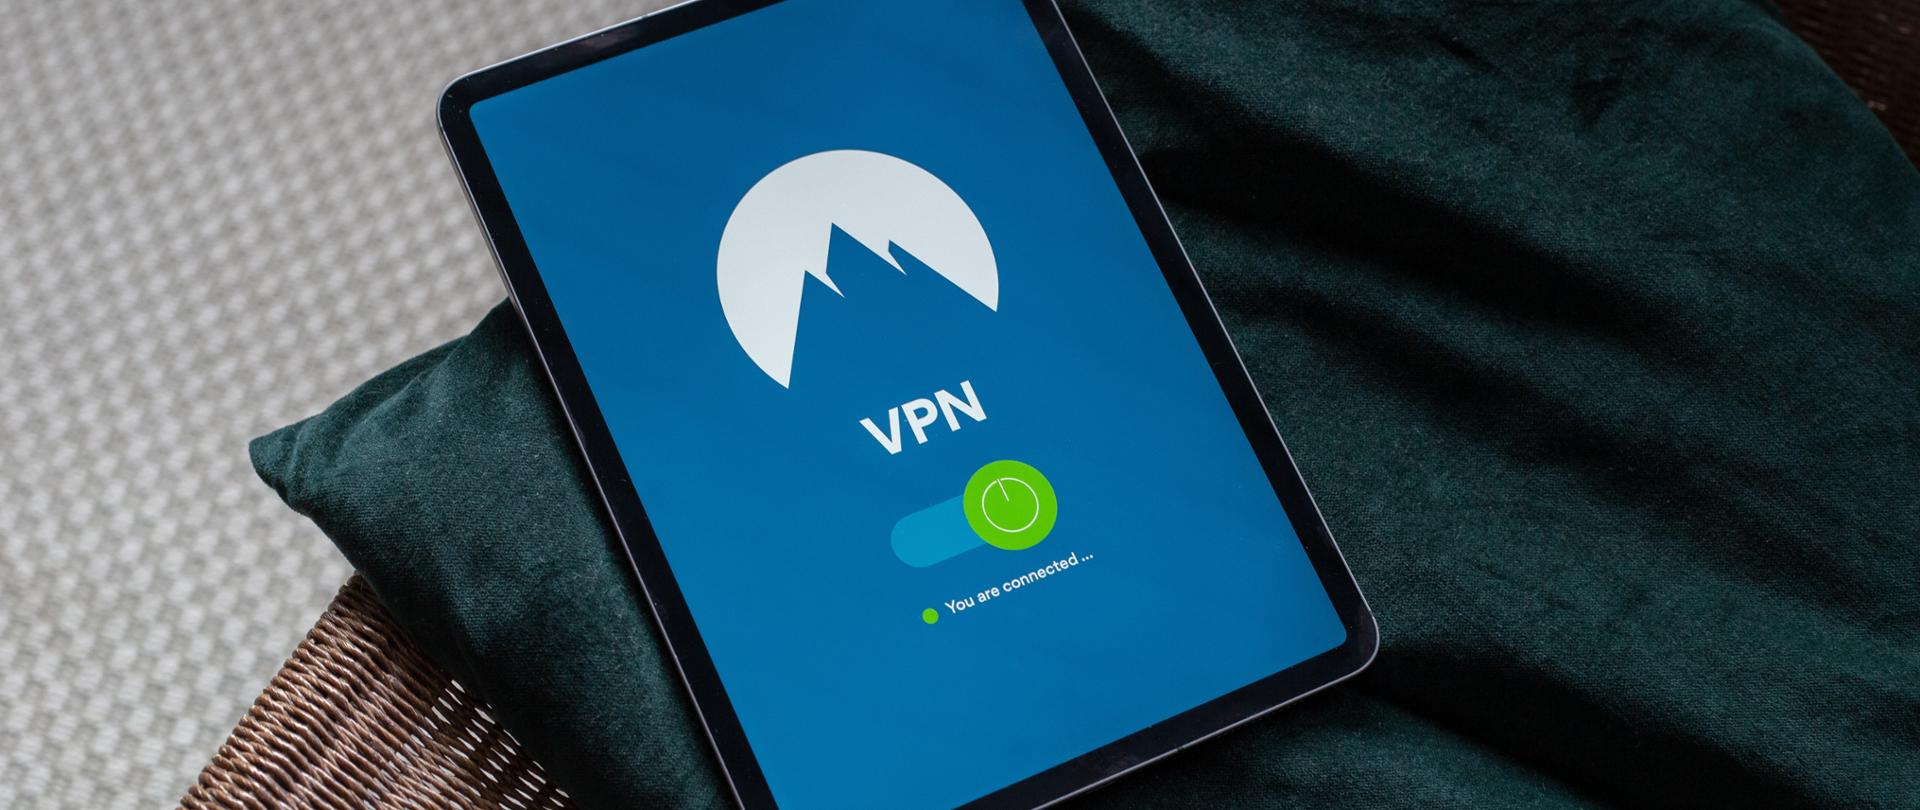 Ekran tabletu wyświetlający napis VPN.